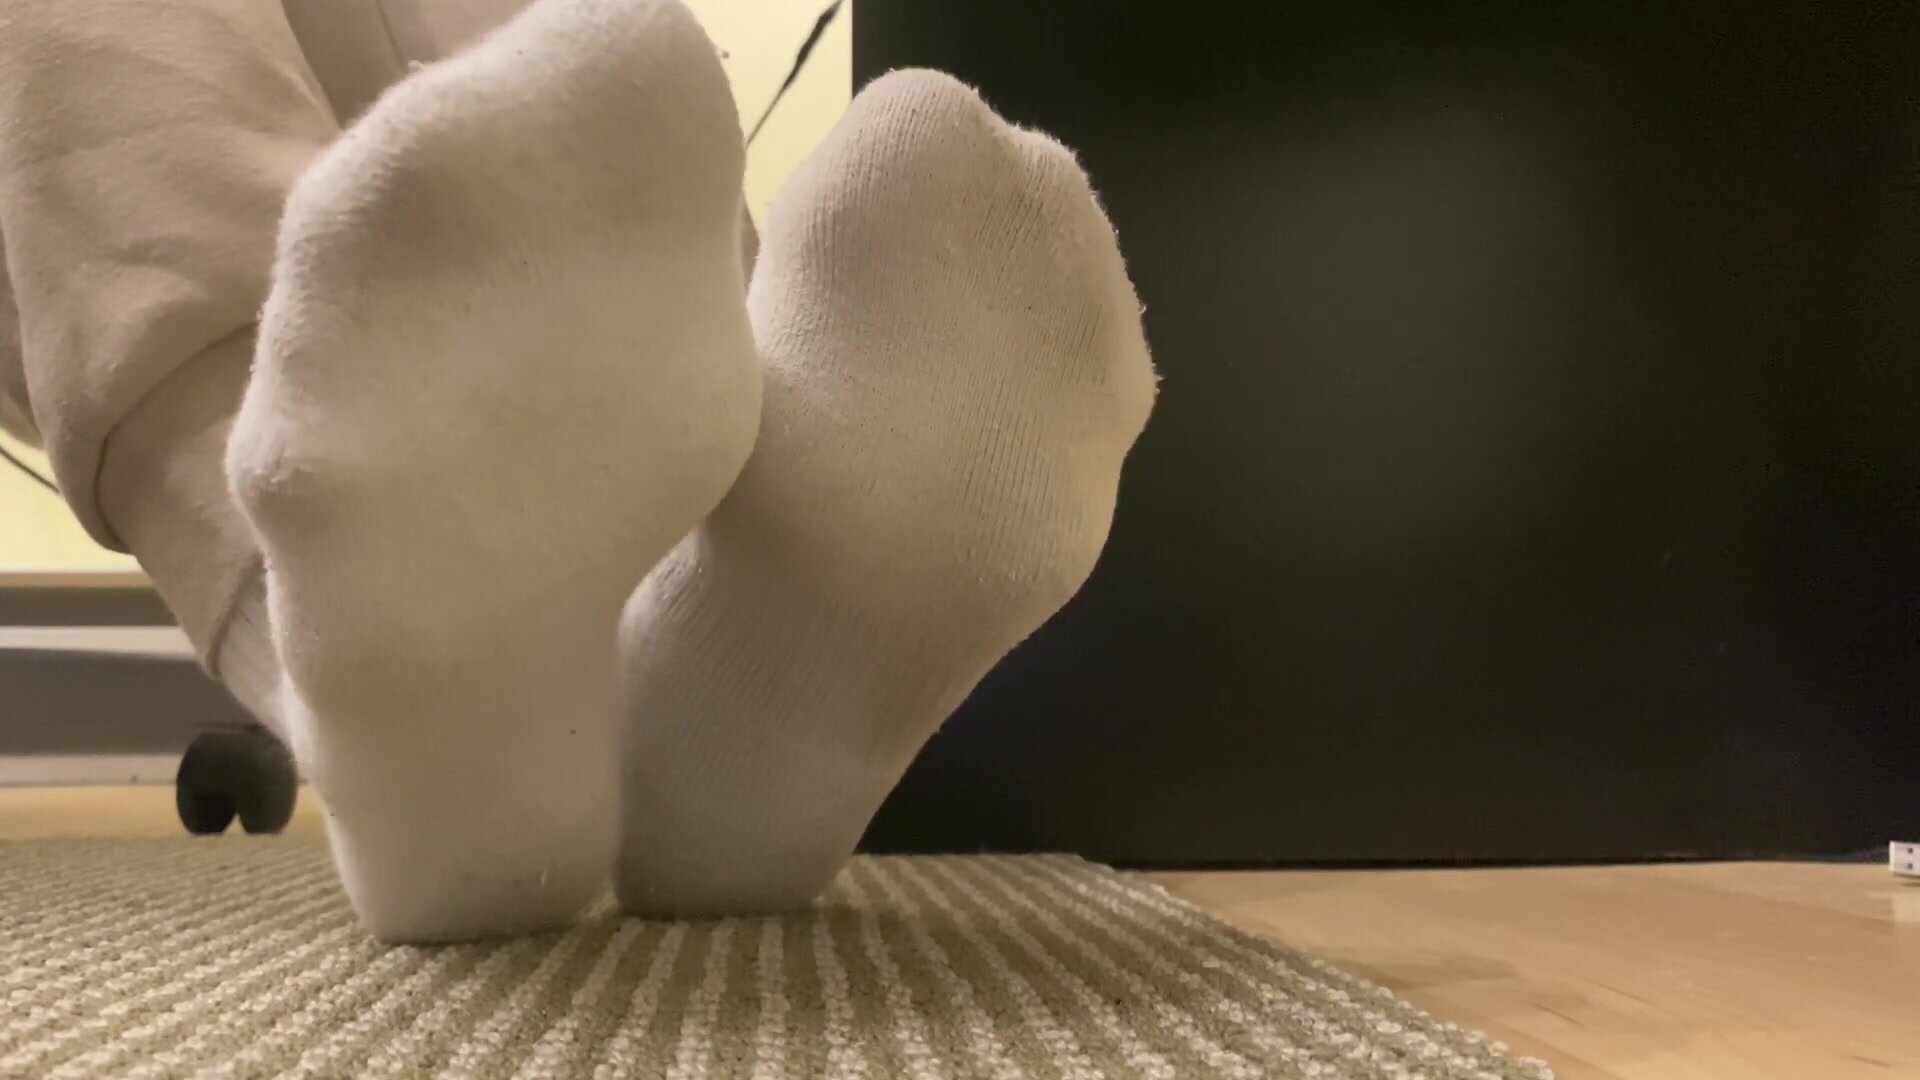 Twinks Sexy Socked Feet Under Desk